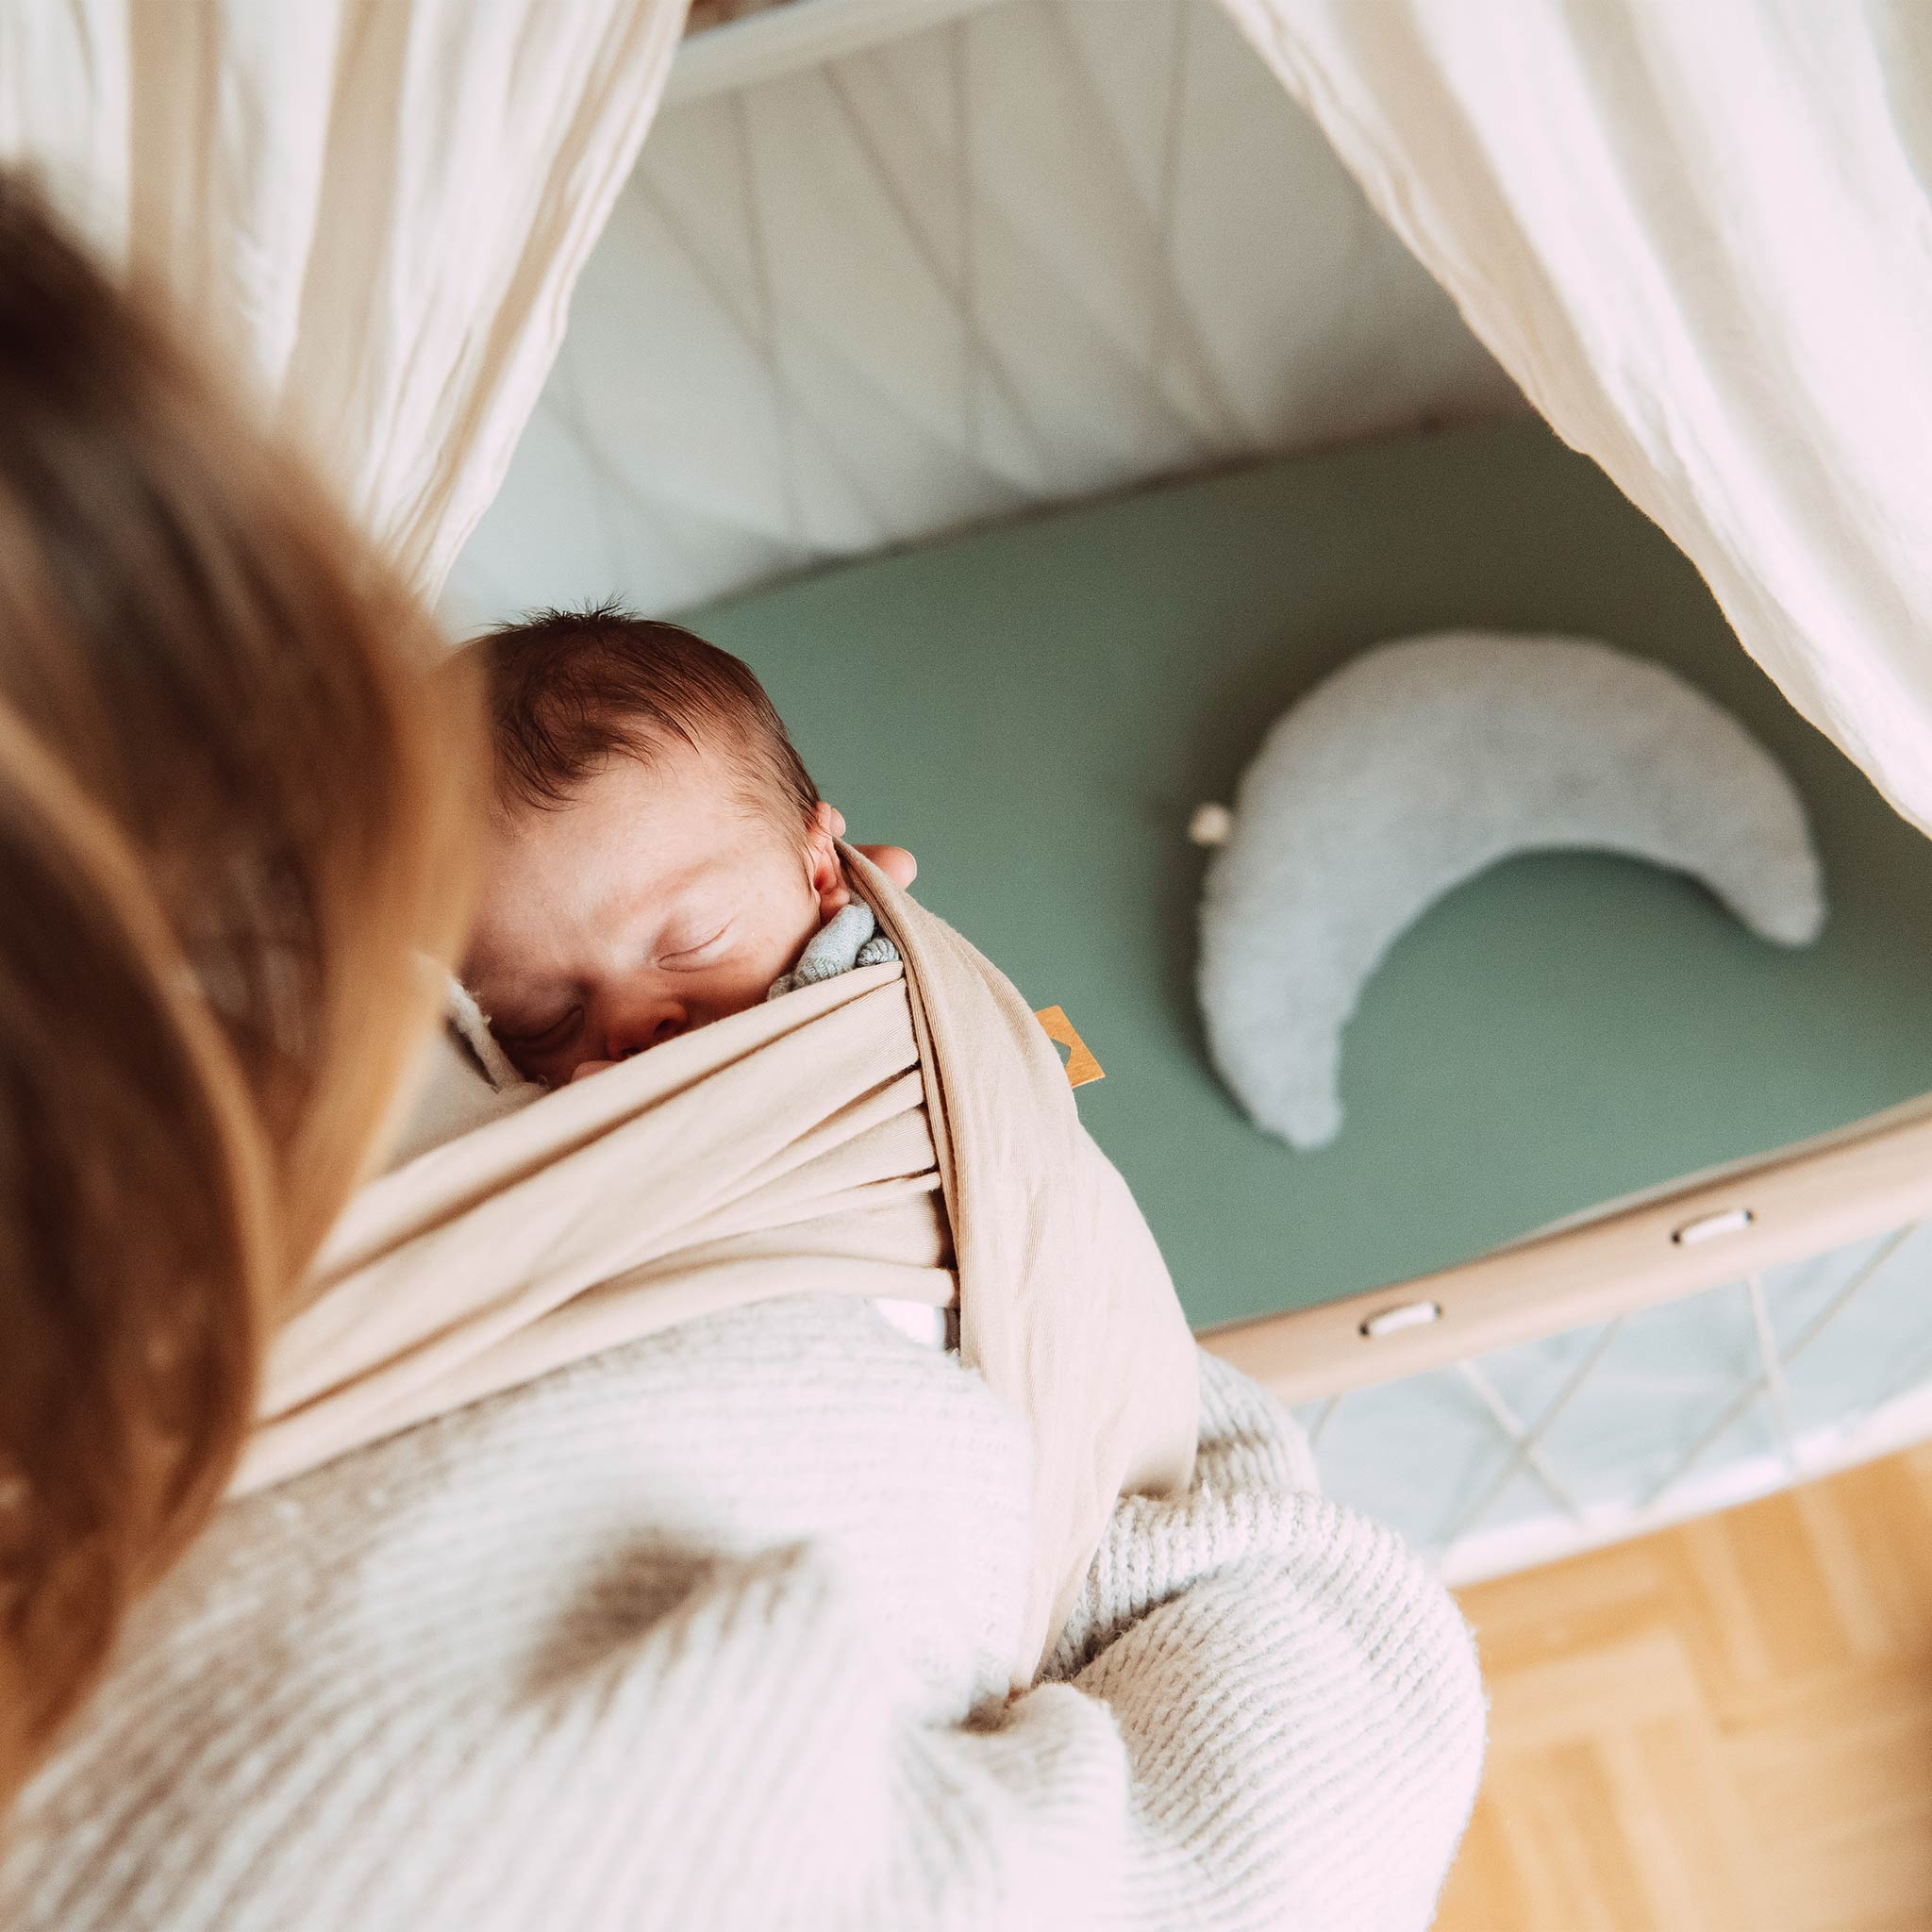 Erstausstattung Baby Liste – was brauche ich wirklich?! Hier findest du eine ehrliche Liste zur Baby Erstausstattung mit vielen sinnvollen und nützlichen Tipps. 